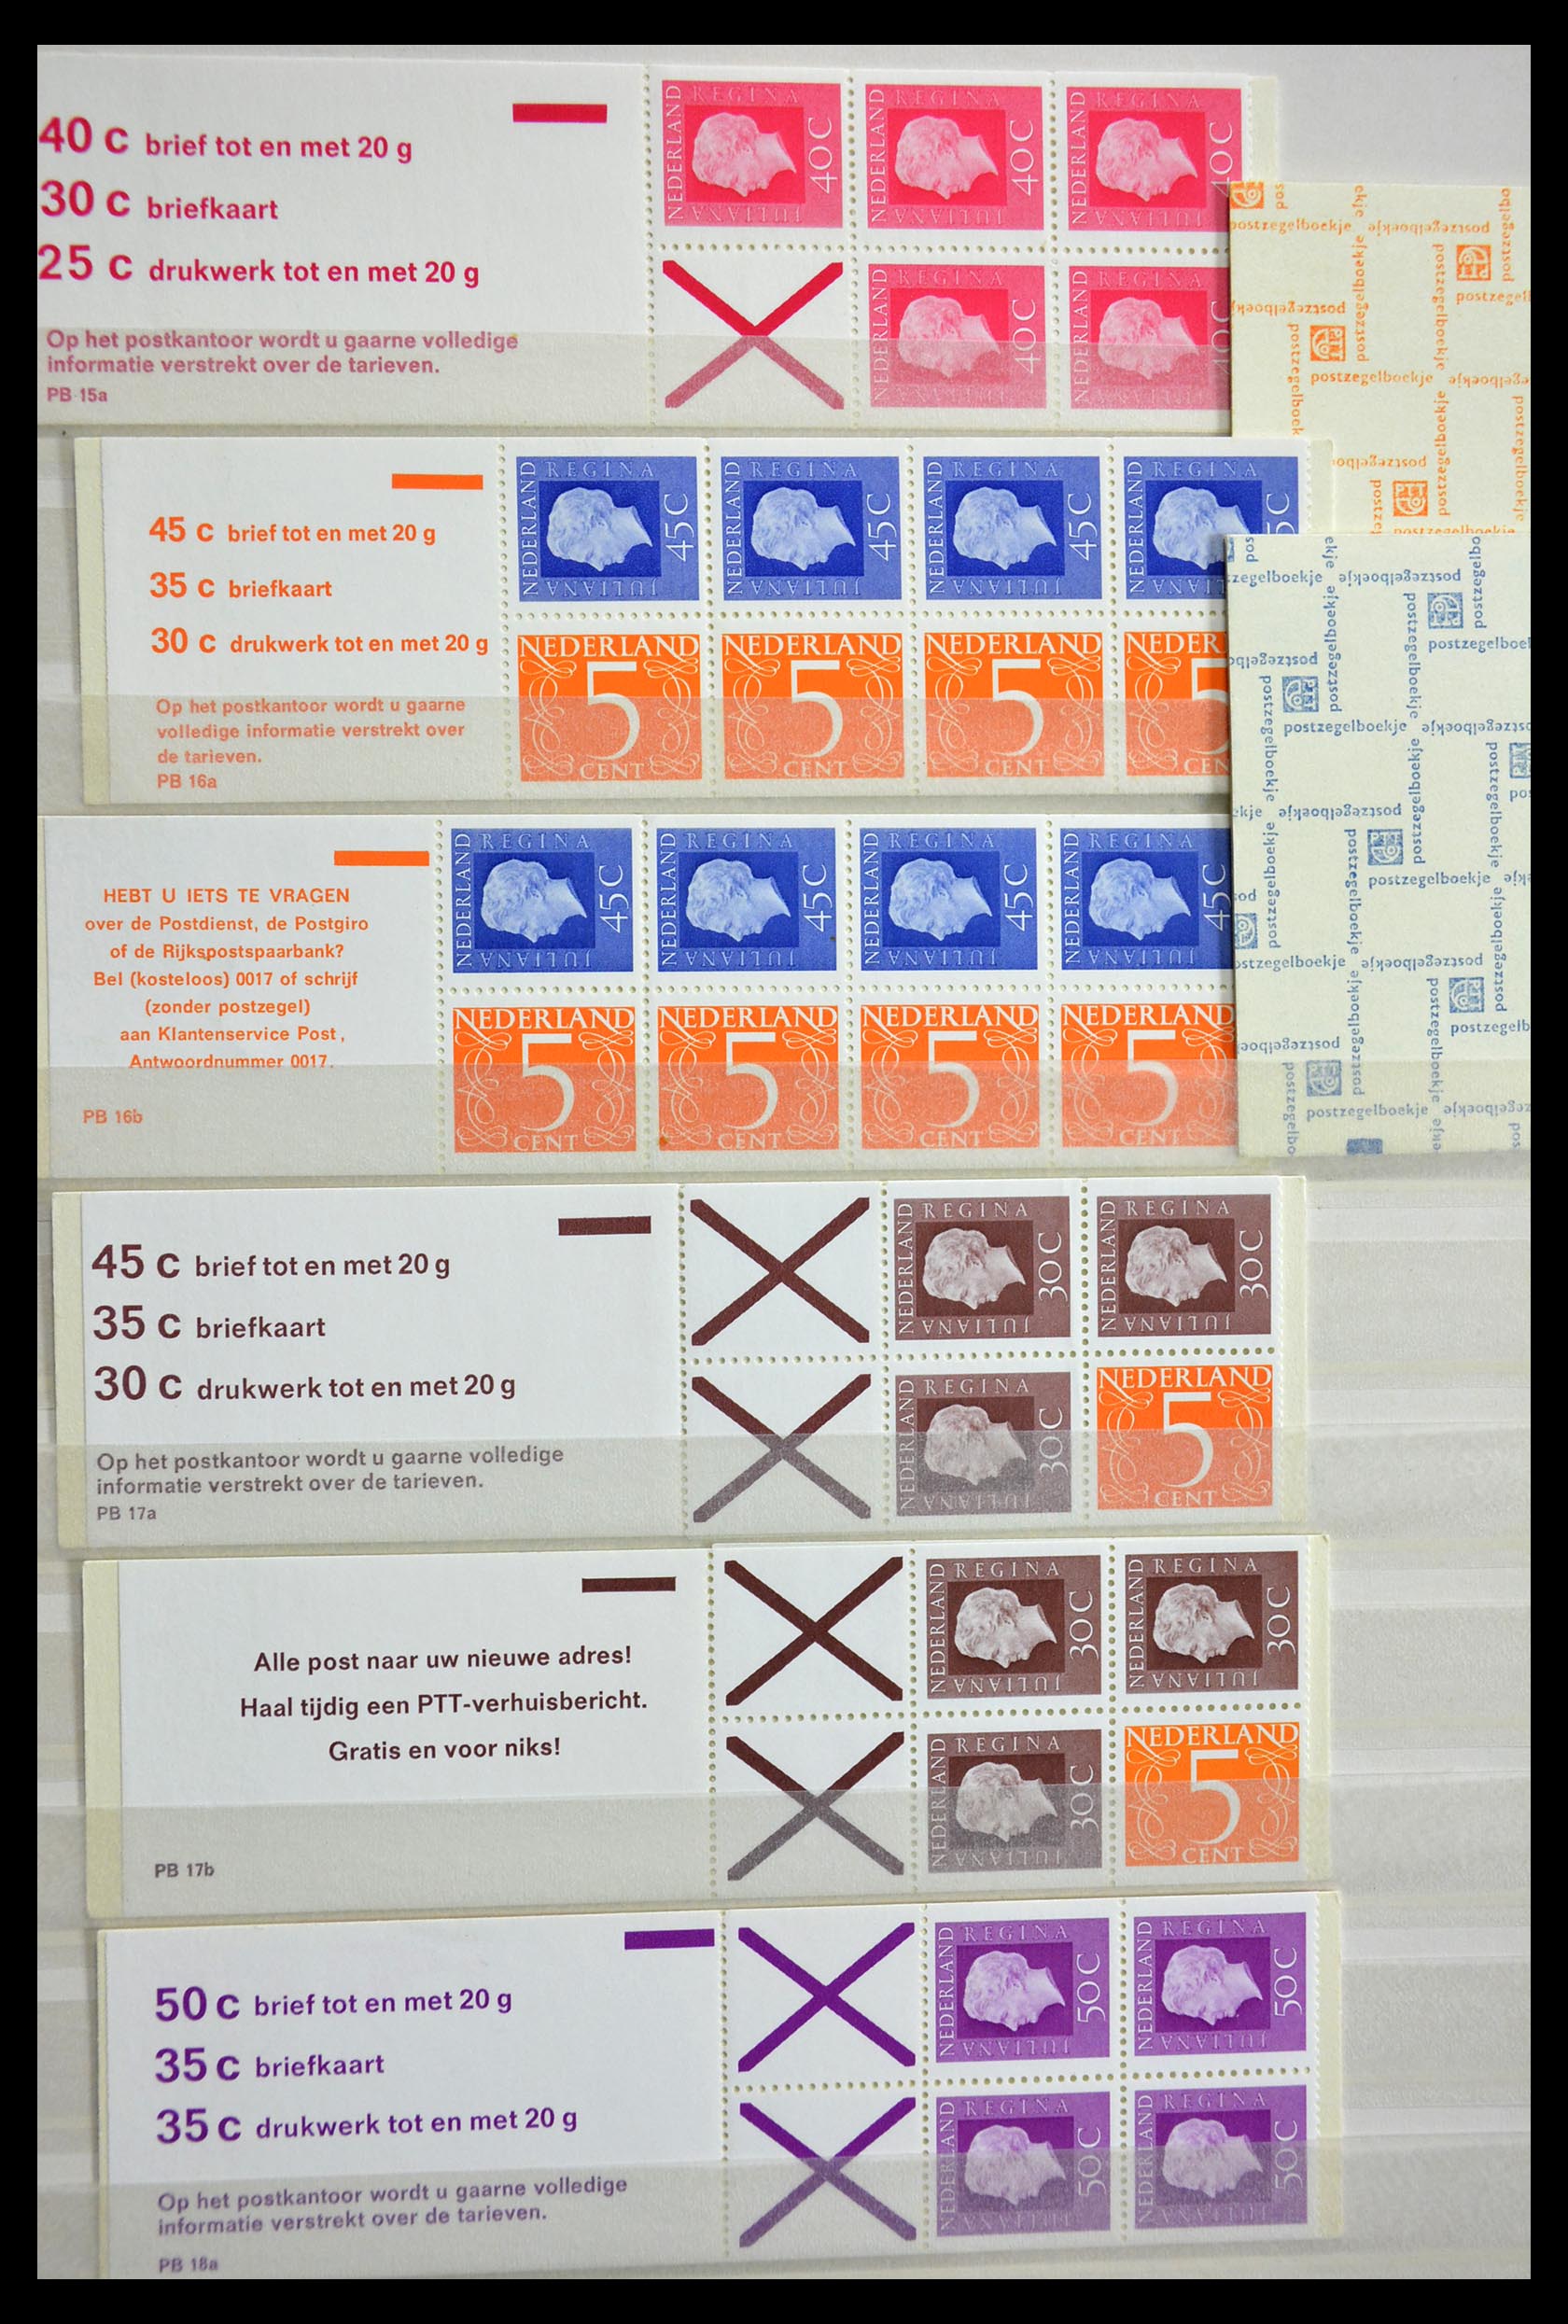 29387 009 - 29387 Netherlands stamp booklets 1964-2014.